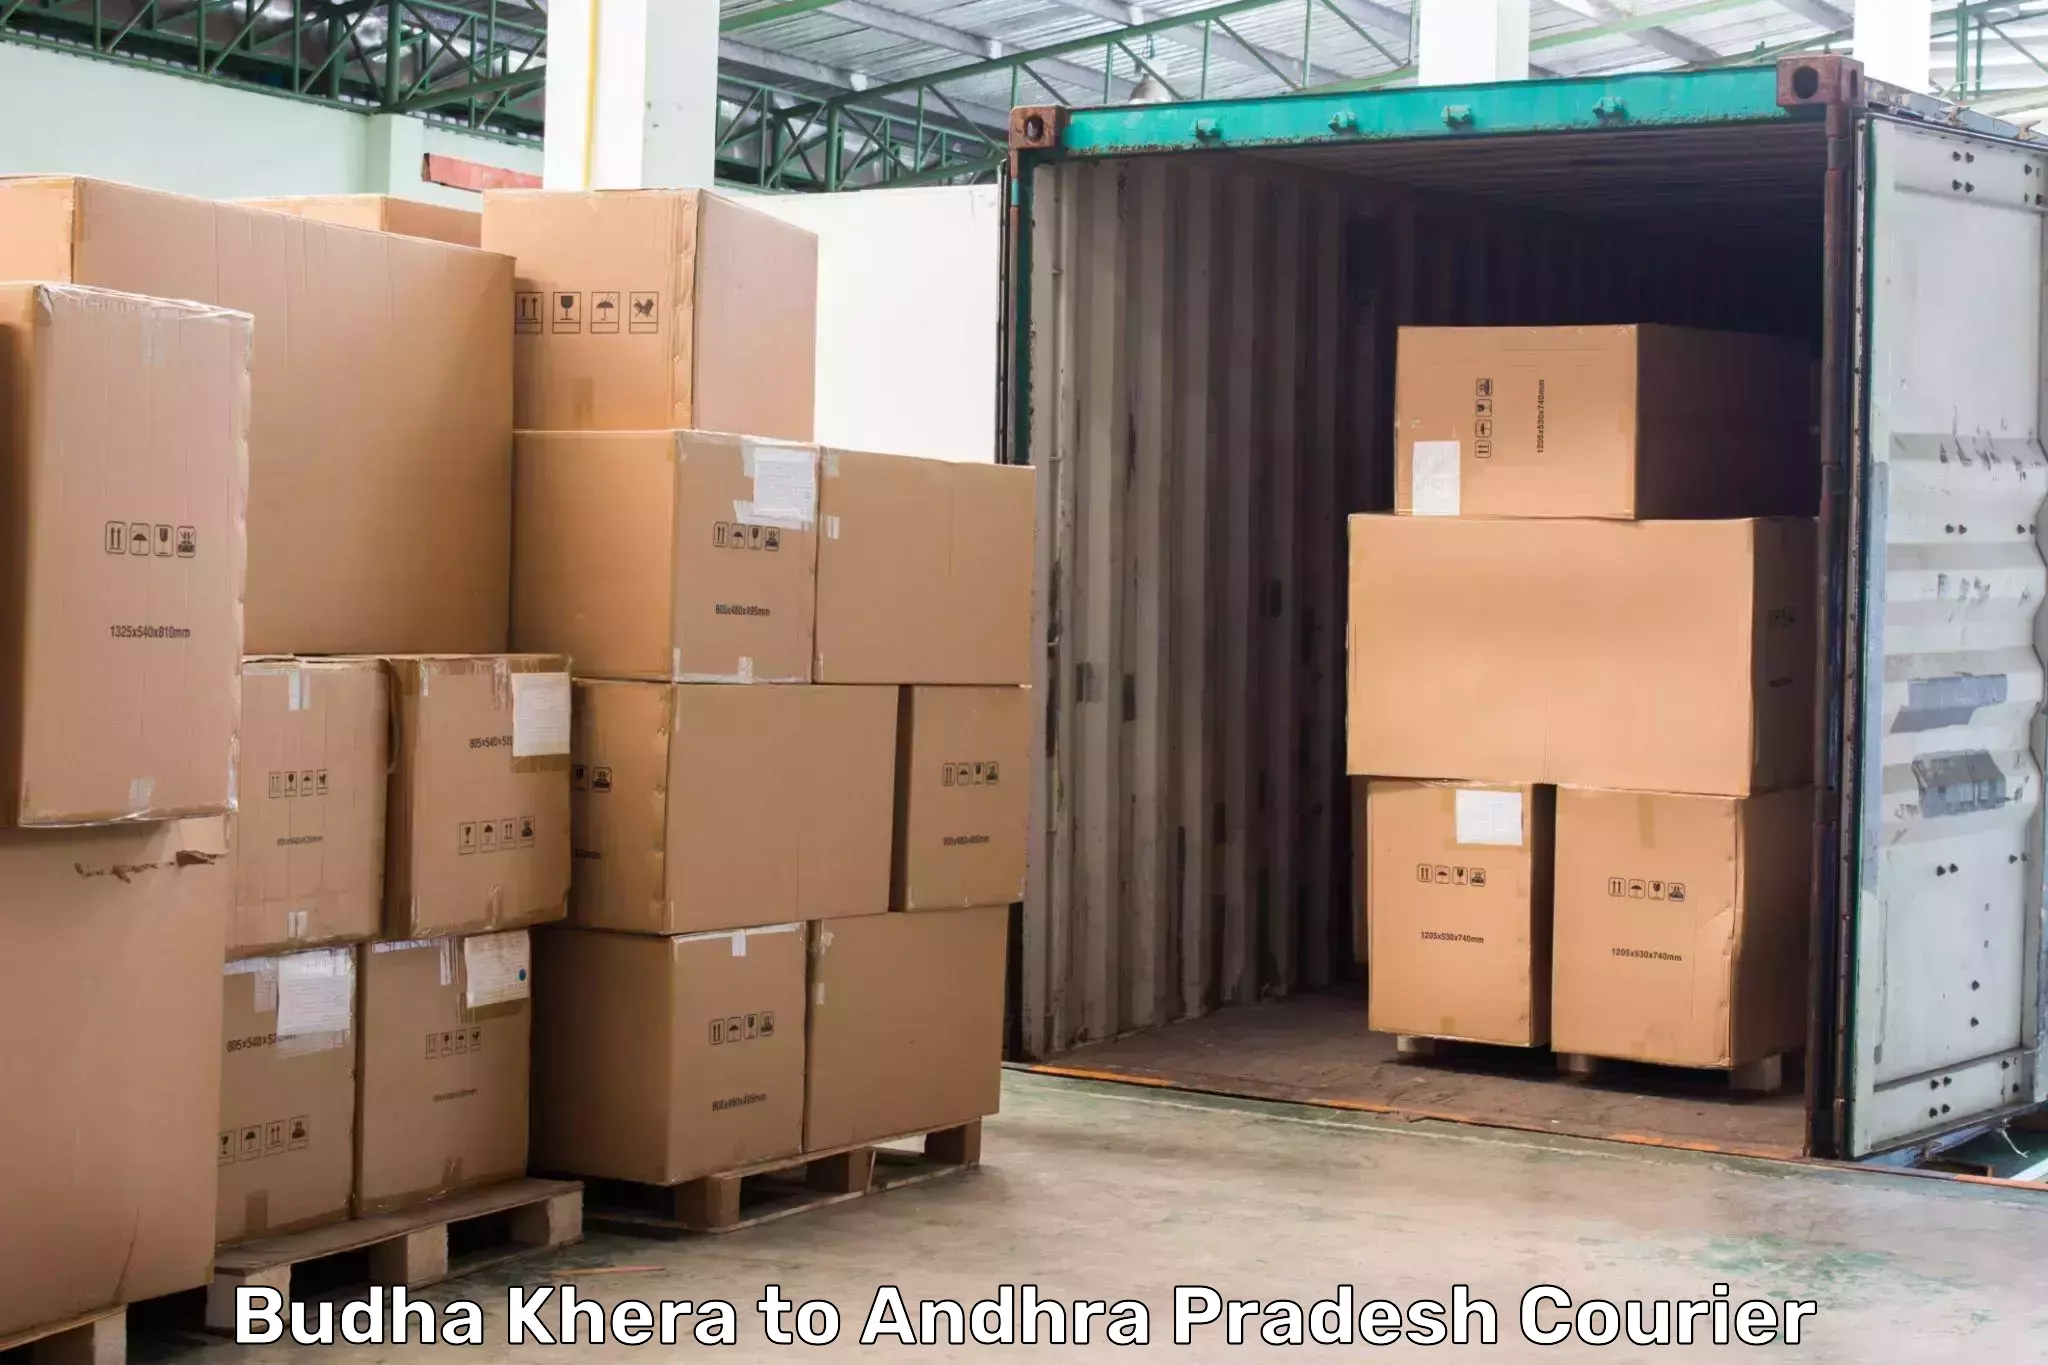 Global shipping networks Budha Khera to Andhra Pradesh